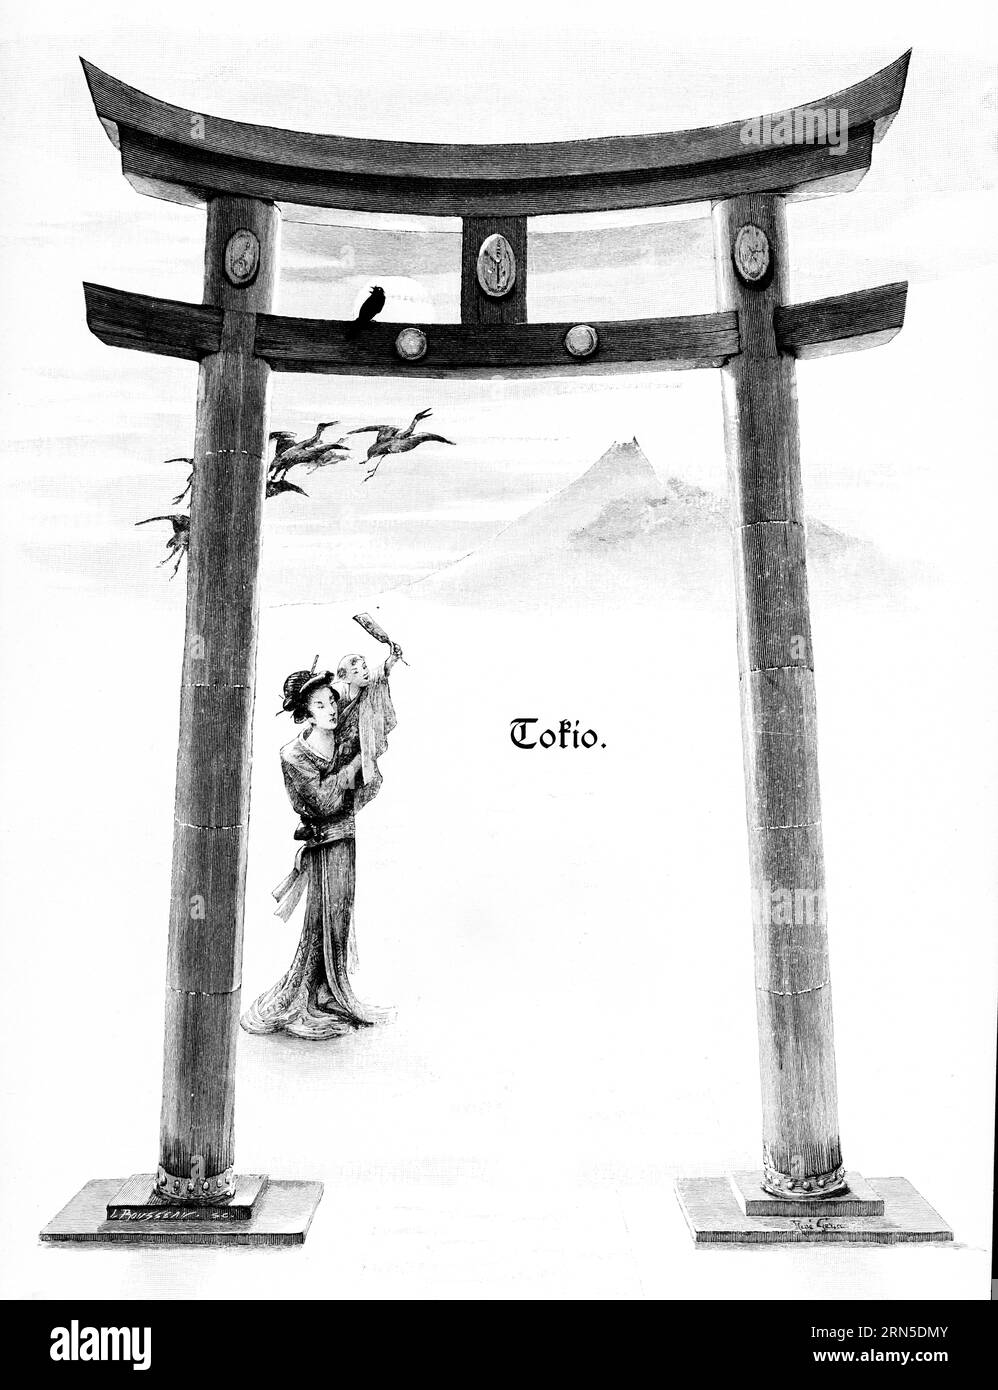 Torii, porte japonaise, Tokyo, Japon, tradition, deux poteaux, double barre transversale, symbolisme, oiseaux, femme portant un enfant, montagne, illustration historique Banque D'Images